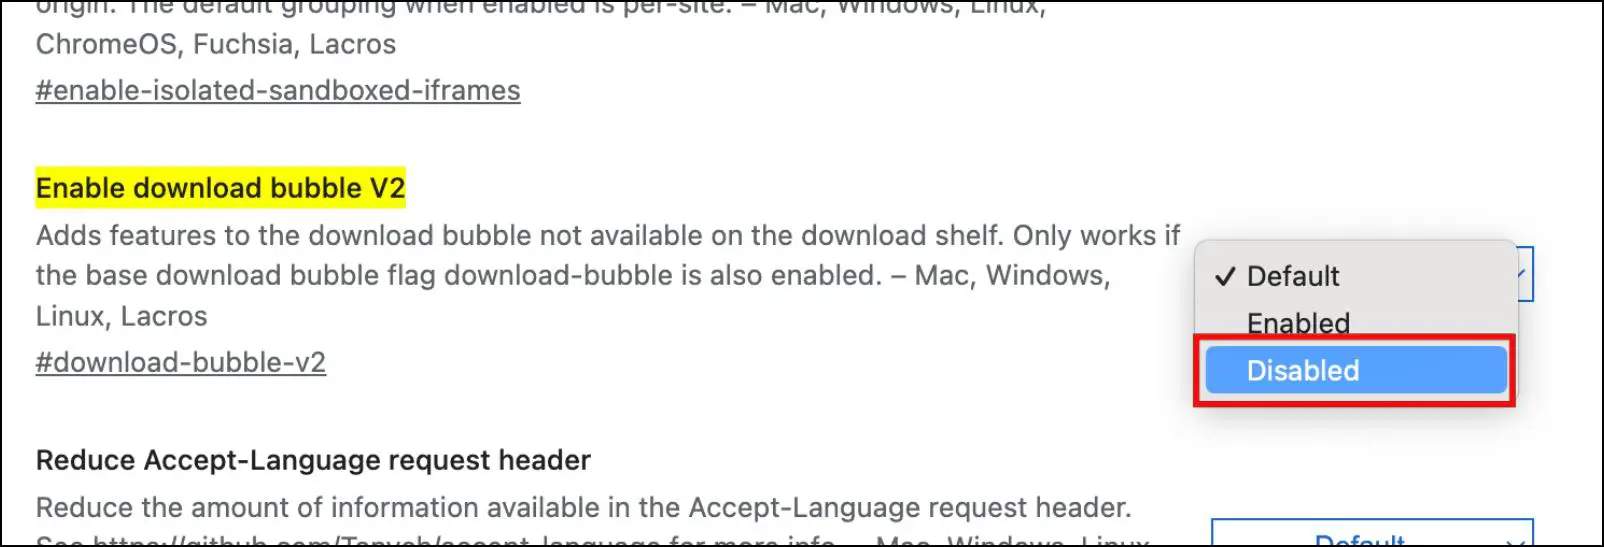 Disable-Downloads-Bubble-V2-Chrome